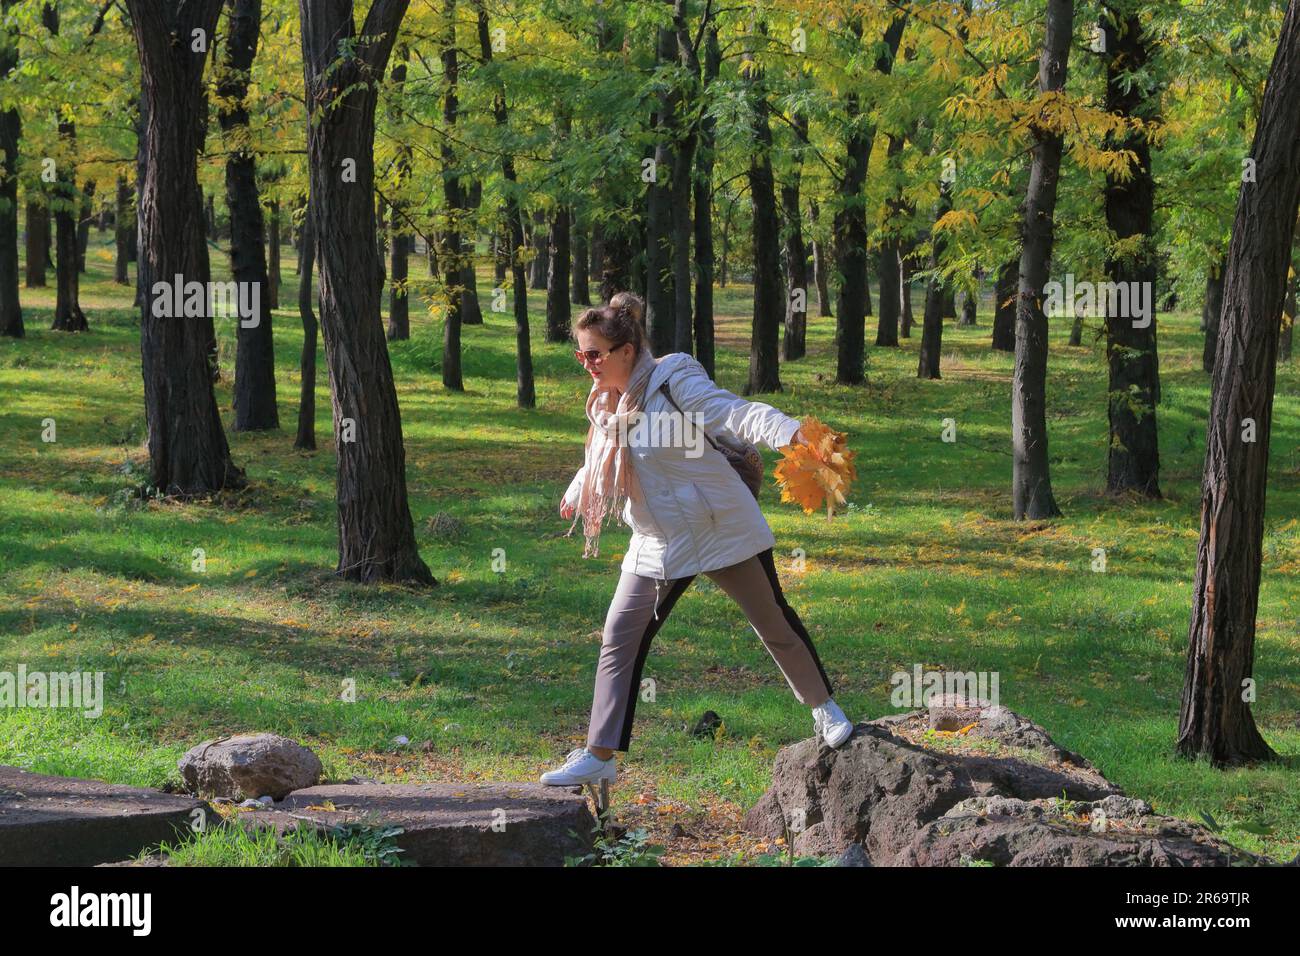 Nella foto, una giovane donna salta da pietra a pietra nella foresta autunnale. Foto Stock